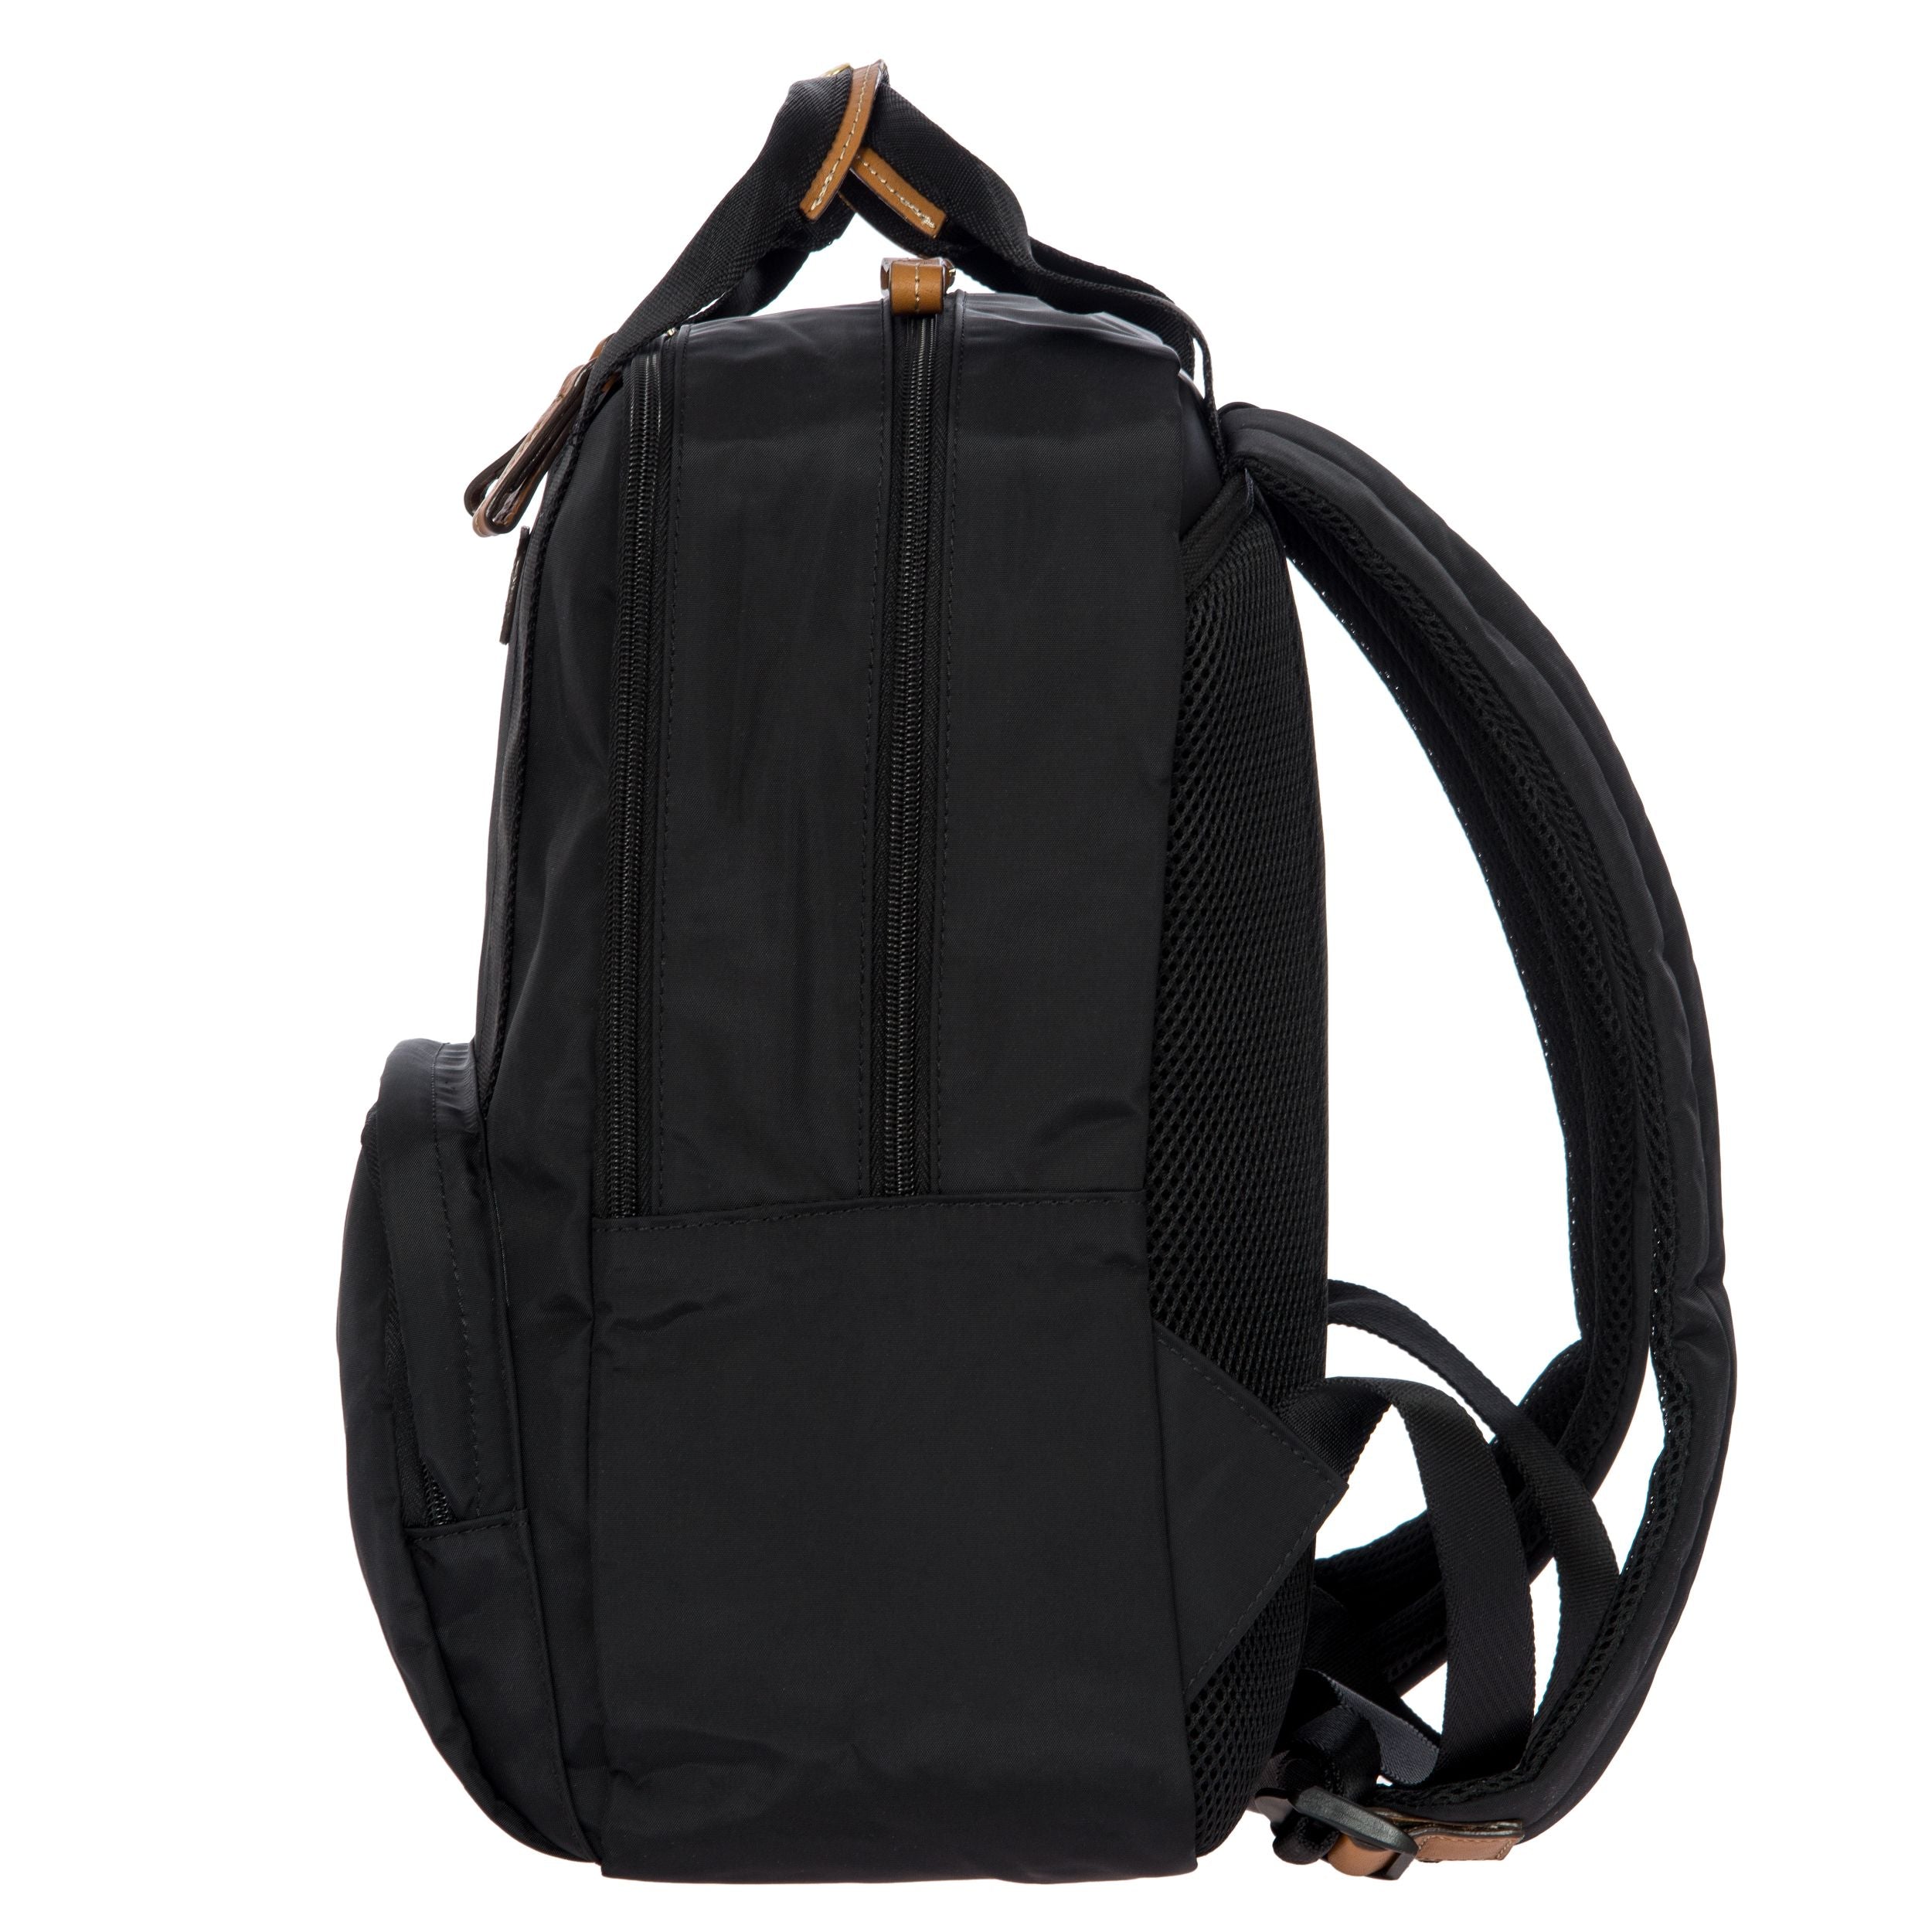 X-Bag / X-Travel Urban Backpack